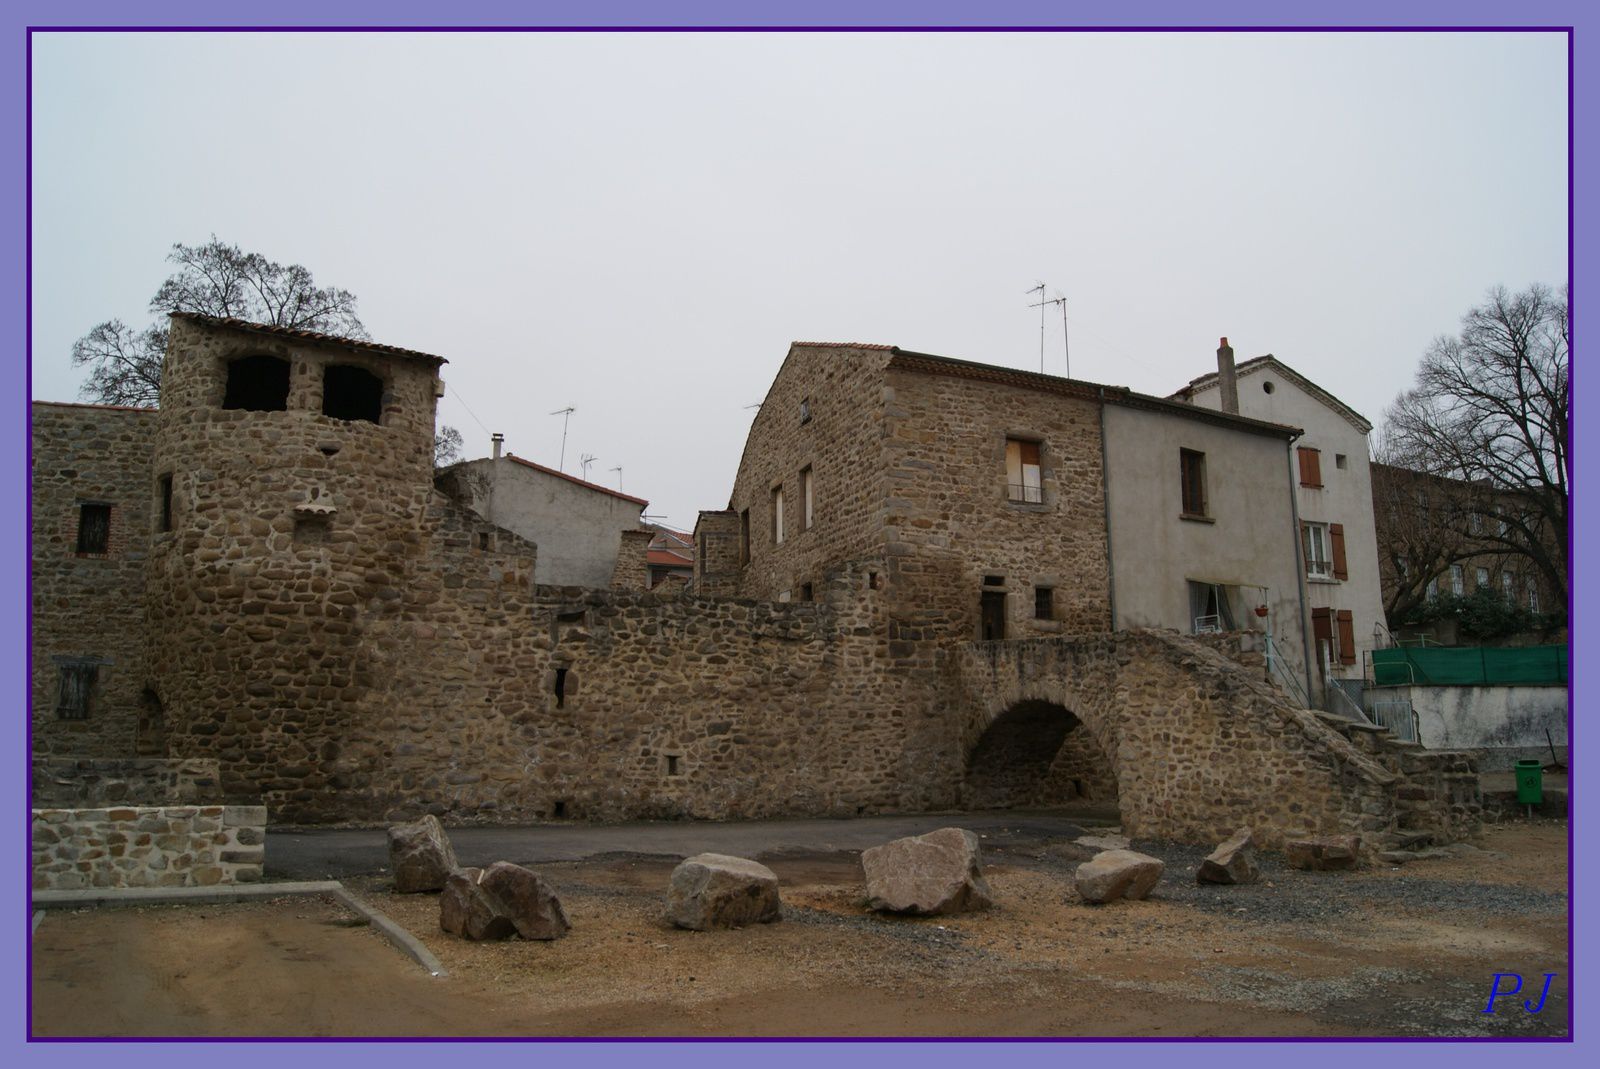 Les villages du Puy de Dome: Brassac-les-mines